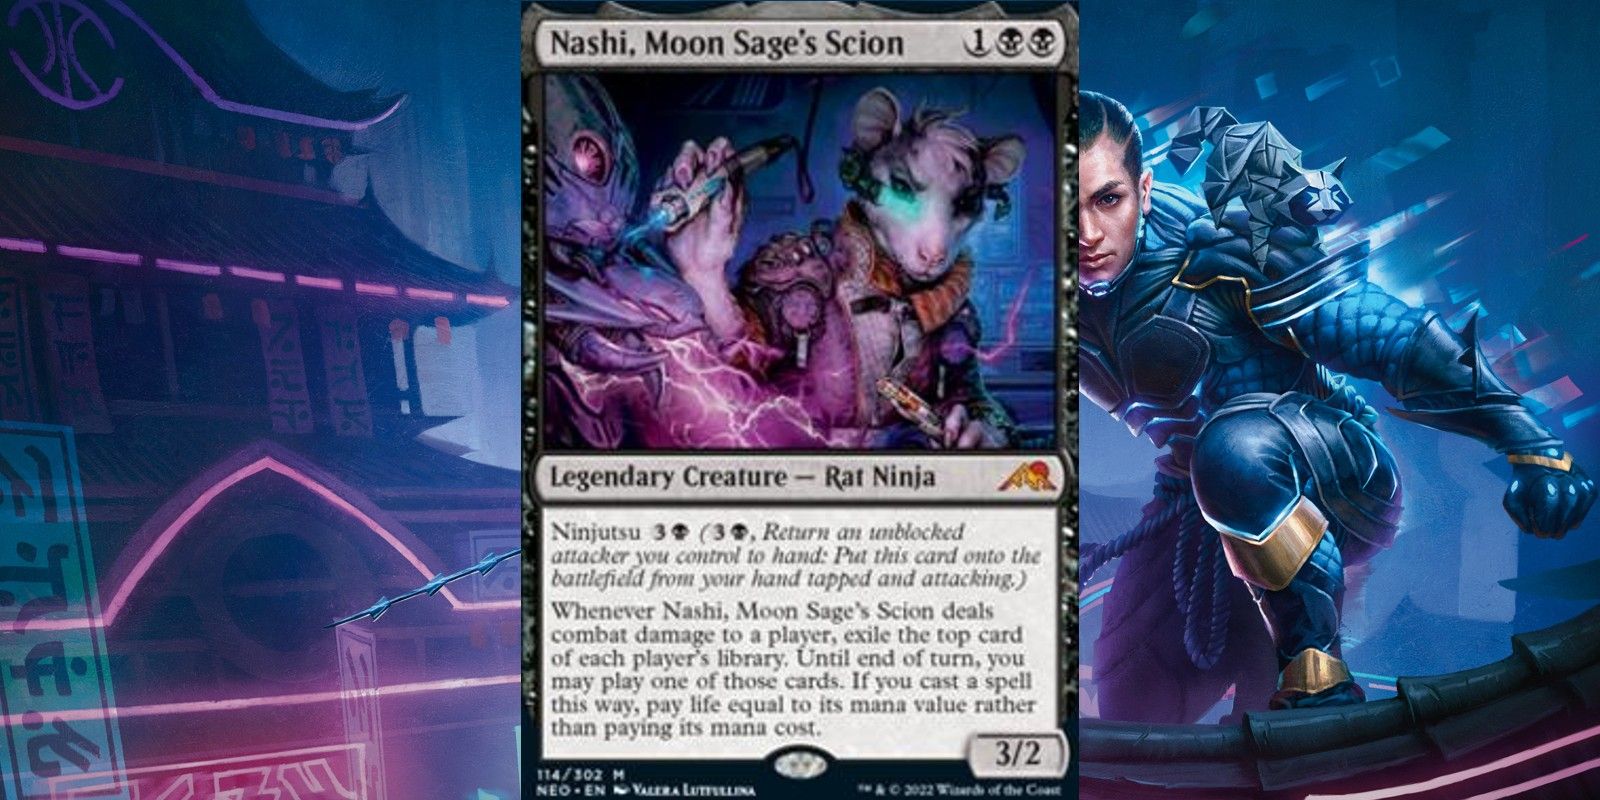 Nashi Moon Sages Scion